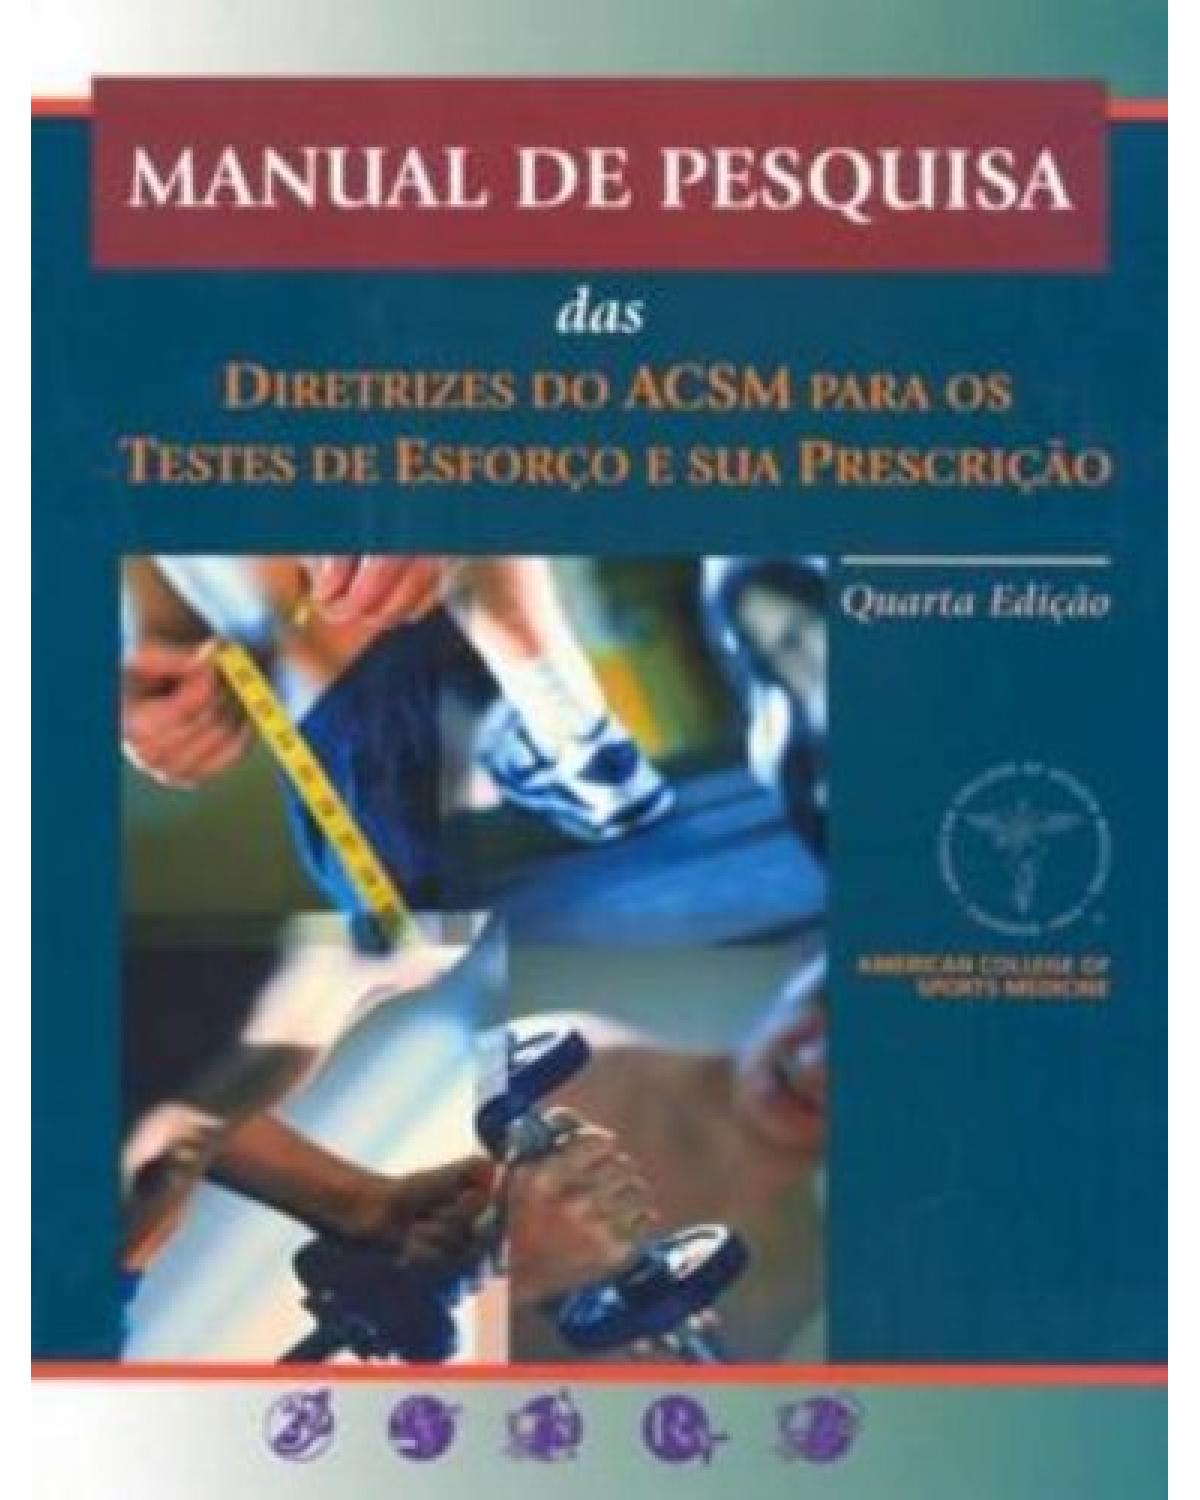 Manual de pesquisa das diretrizes do ACSM para os testes de esforço e sua prescrição - 4ª Edição | 2003